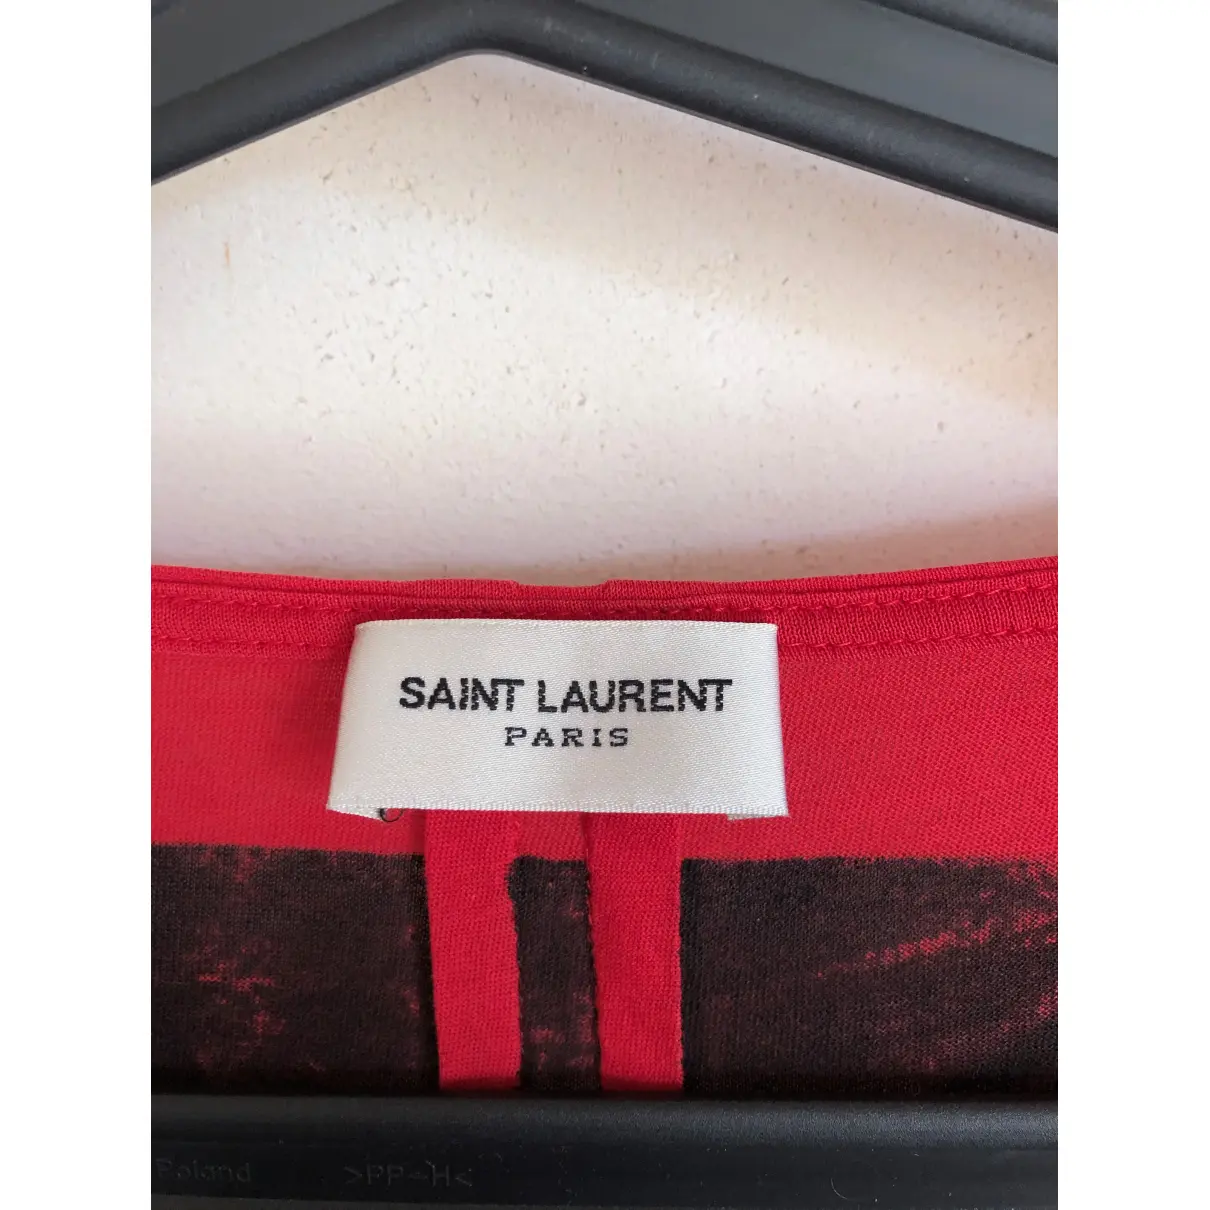 Buy Saint Laurent Red Cotton T-shirt online